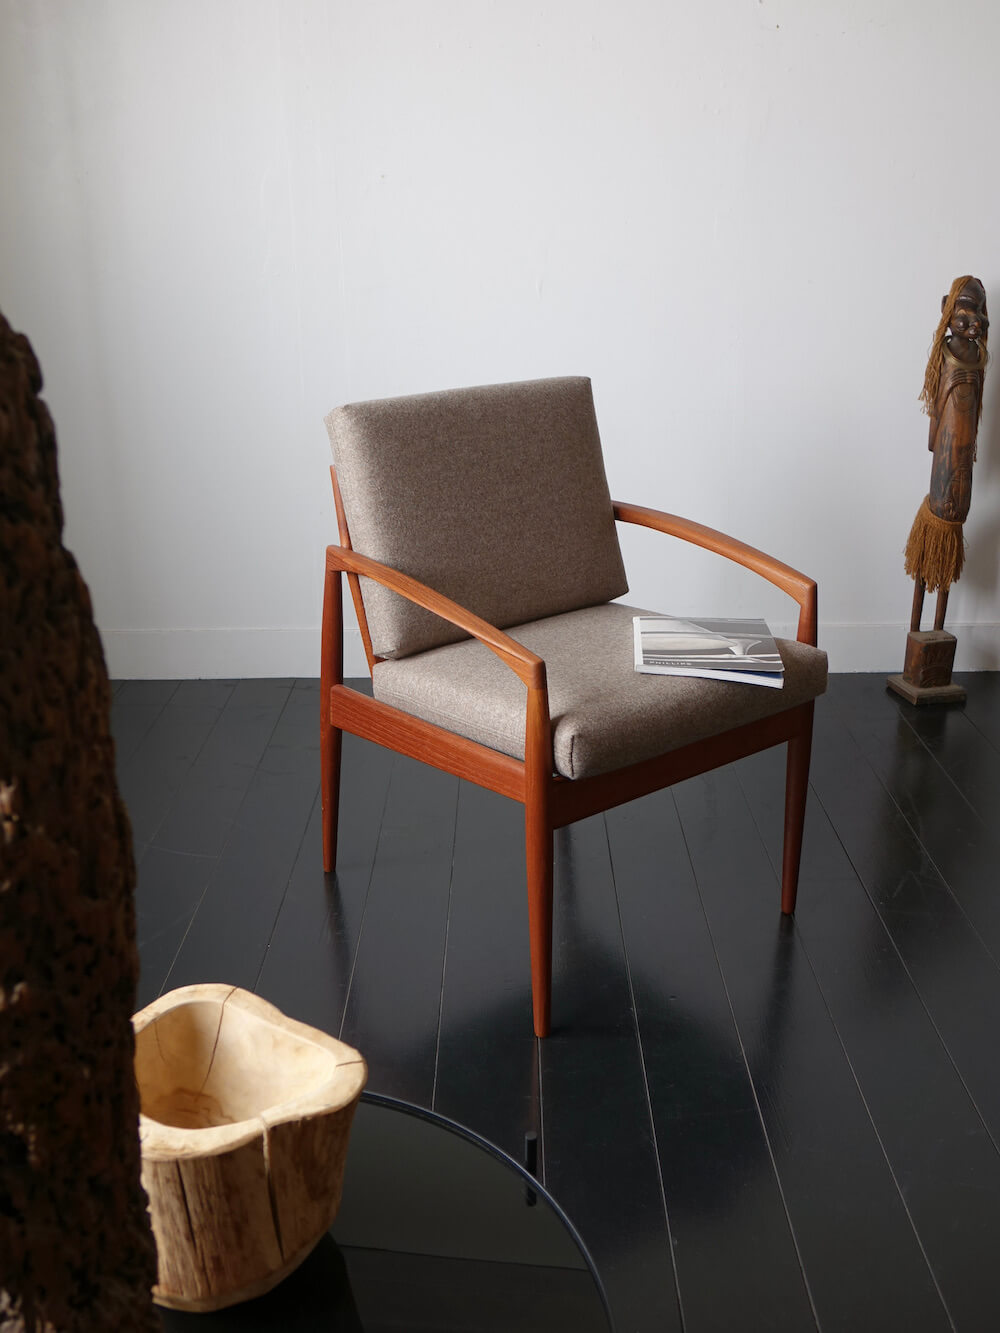 Paper knife armchair by Kai Kristiansen for Magnus Olesen